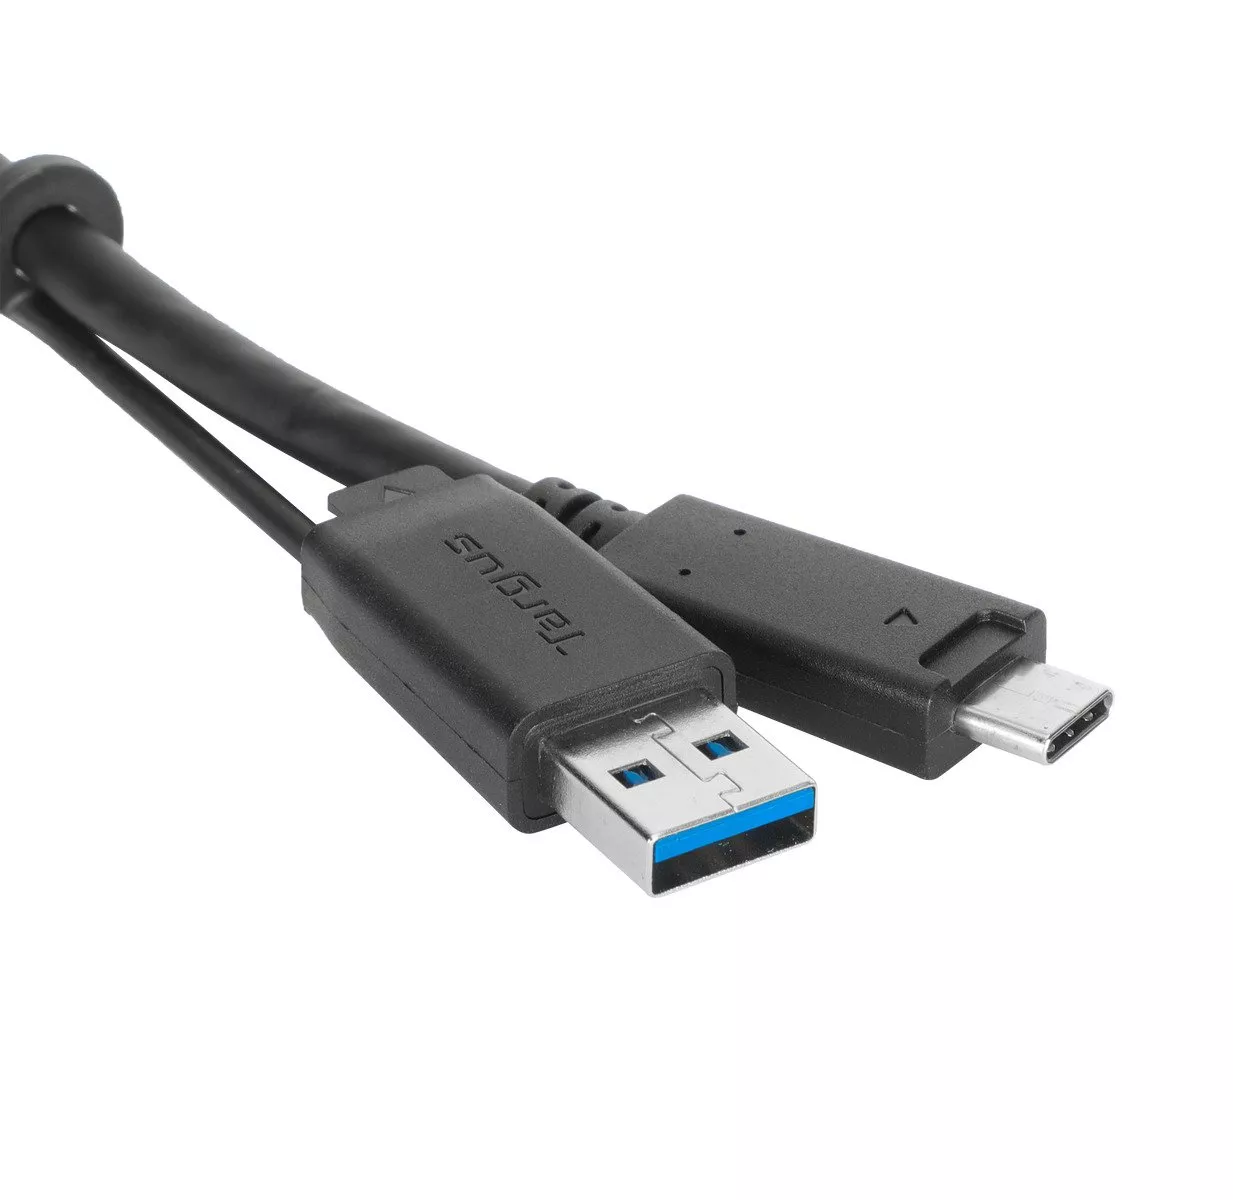 Vente TARGUS 1m USB A to C Tether cable Targus au meilleur prix - visuel 8